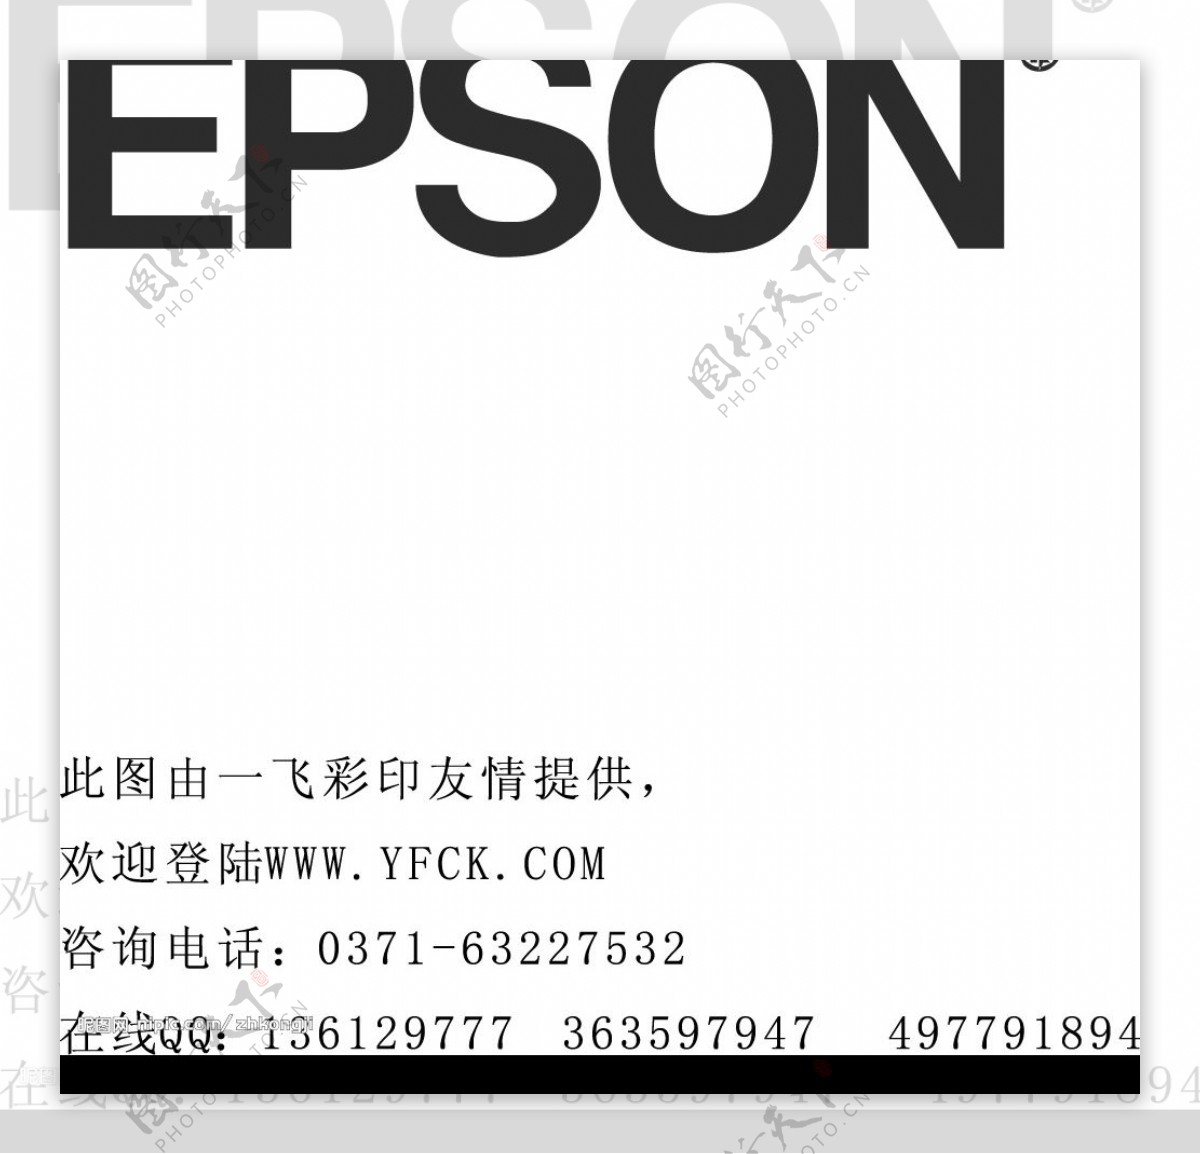 EPSON图片